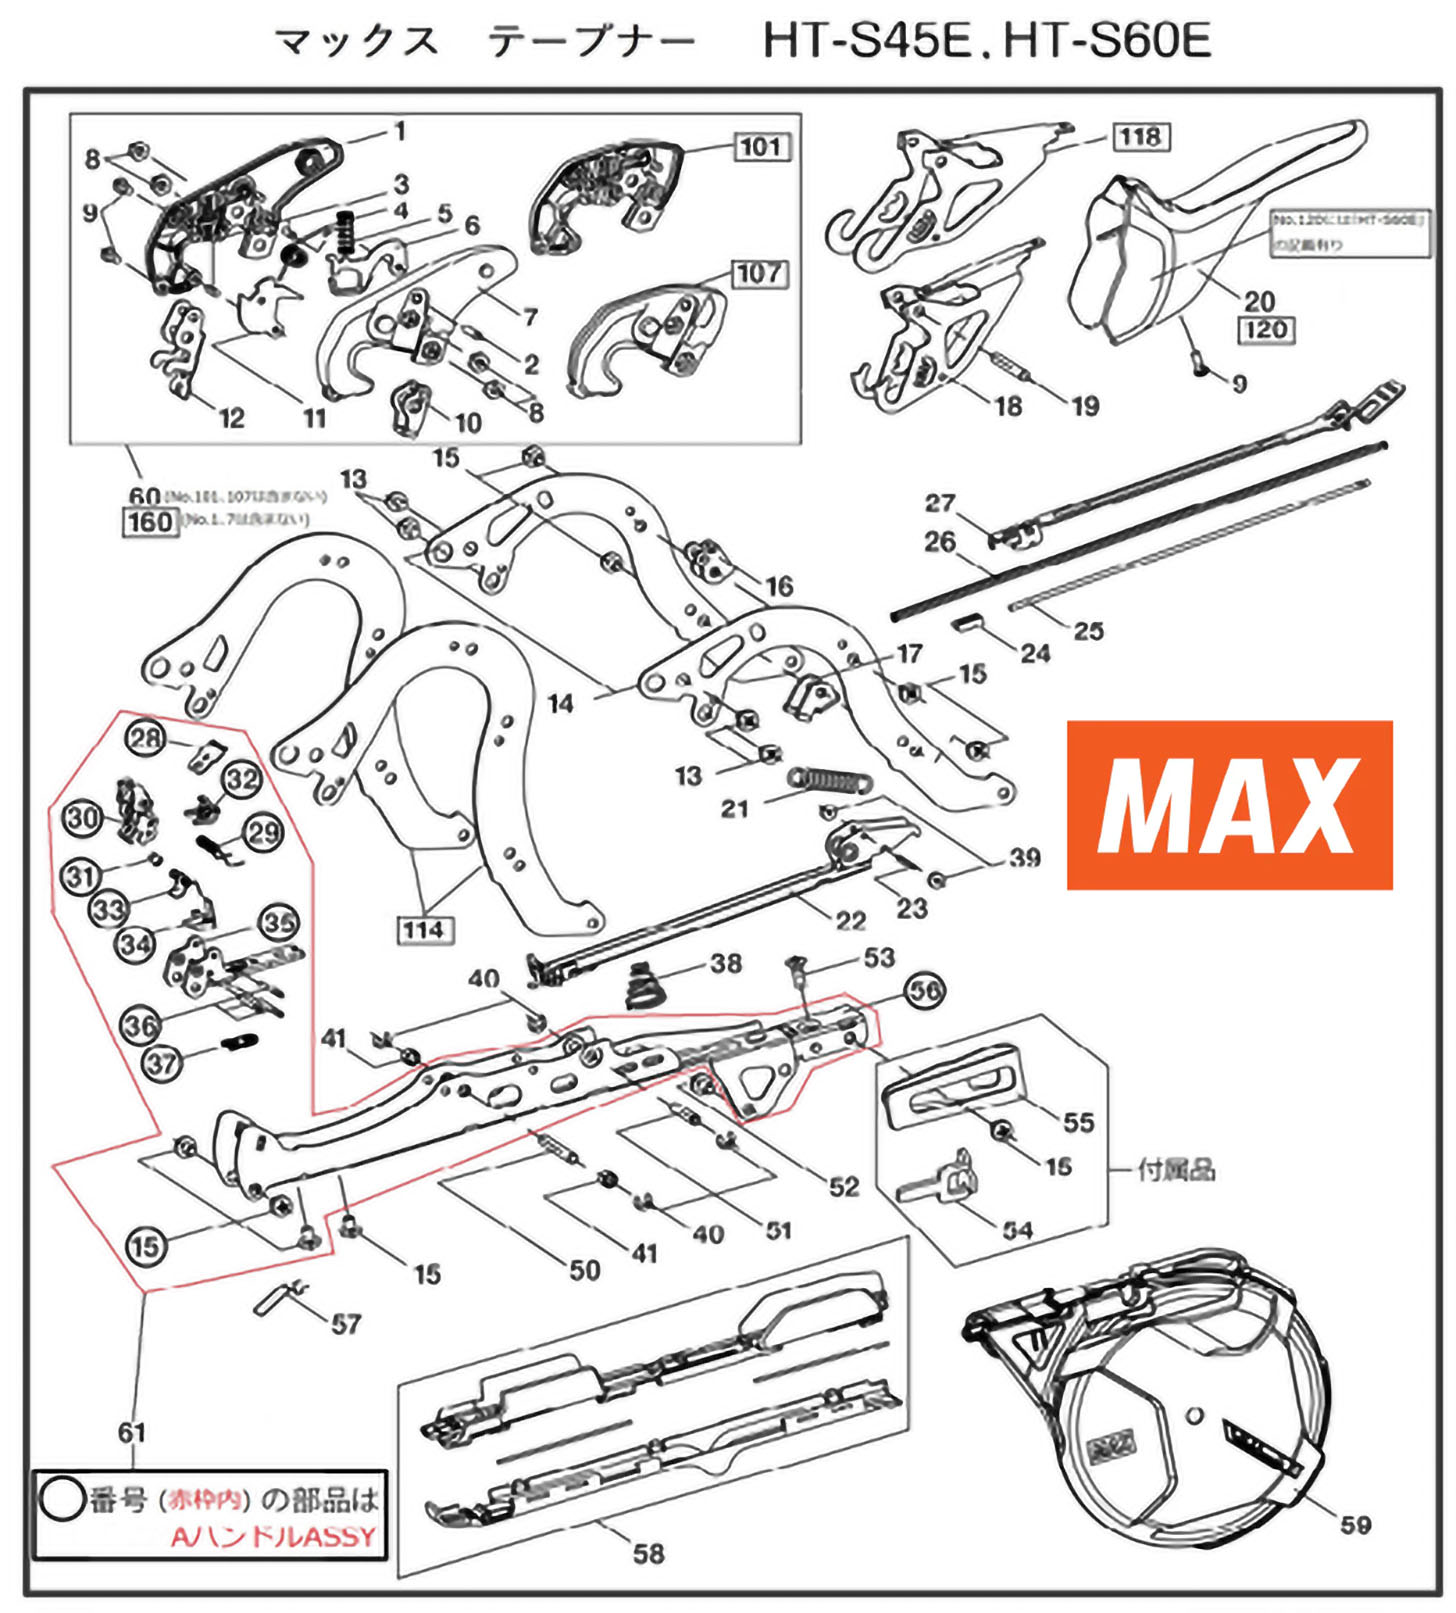 MAX Tapener Part AA23502 SCREW FLAT ROUND HEAD M4x12 Fits MAX HT-S45E #53